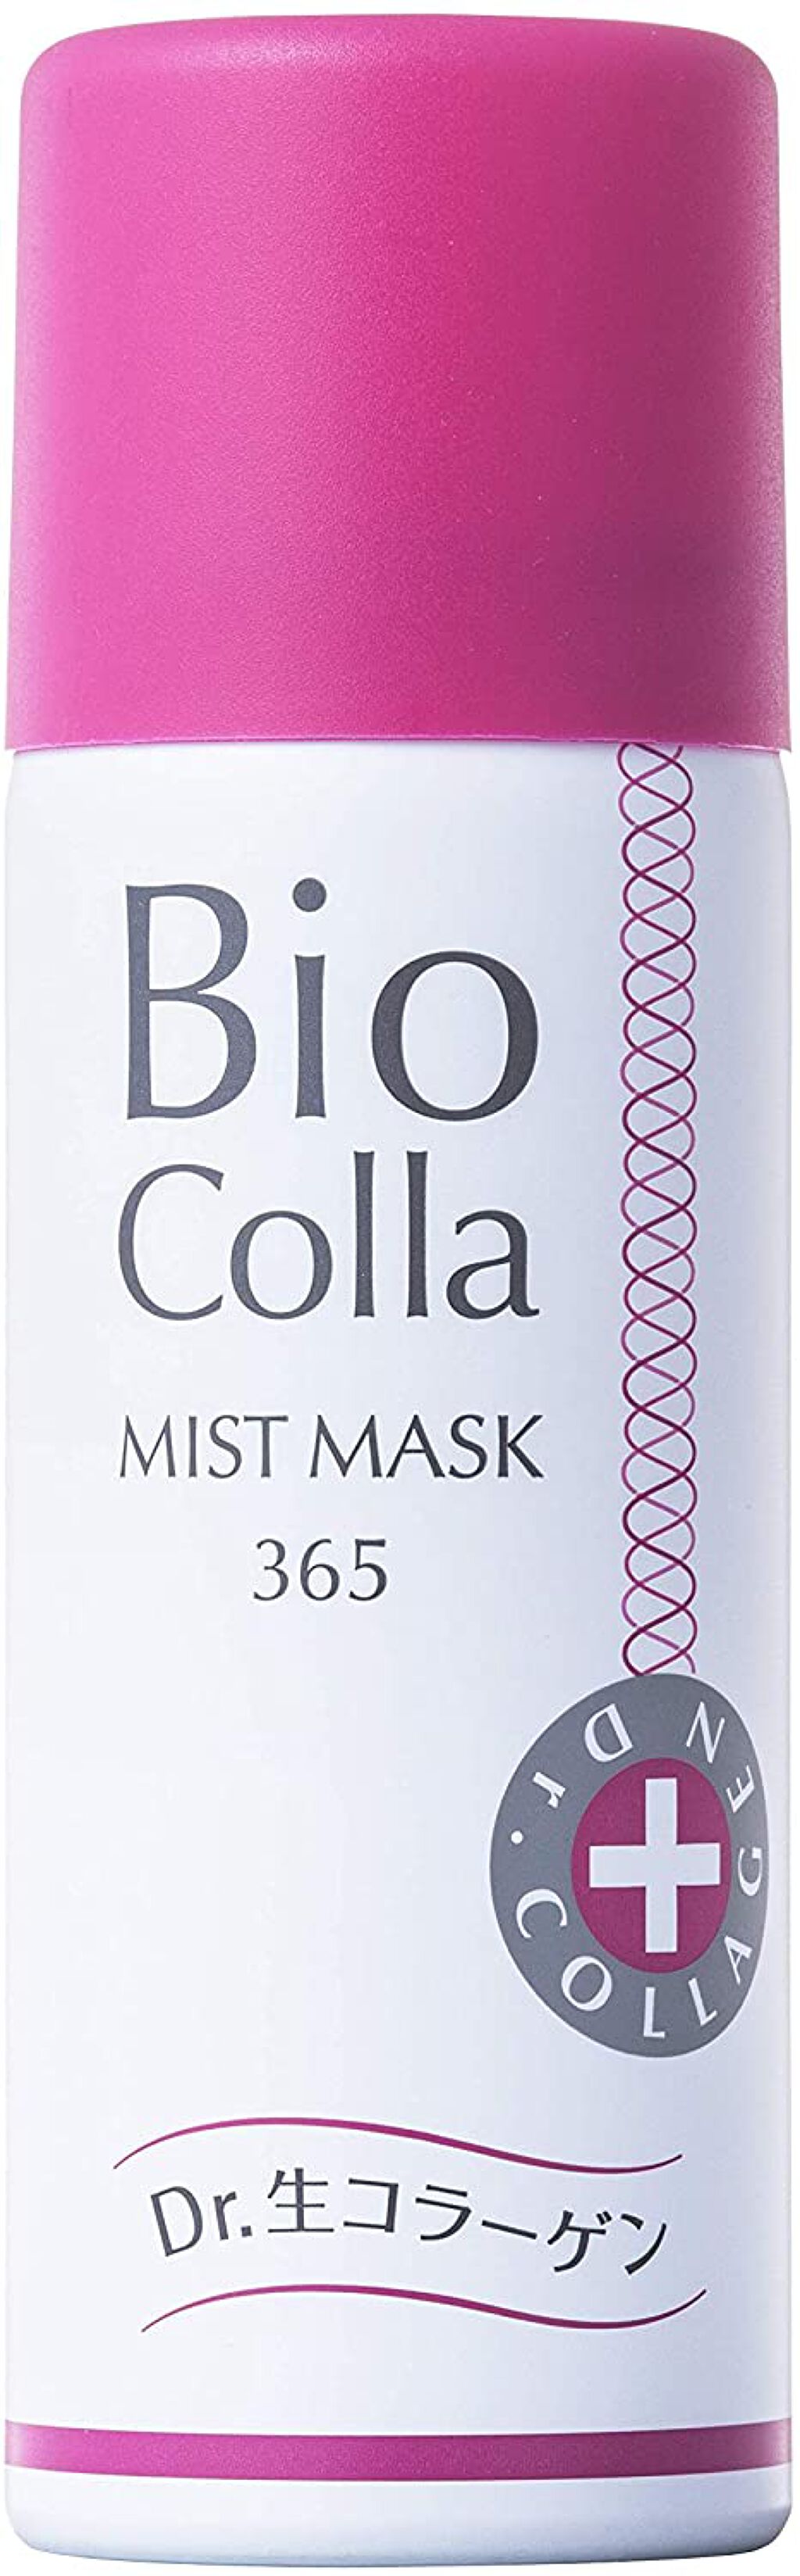 試してみた】生コラーゲン ミストマスク 365 / ビオコラの効果・肌質別